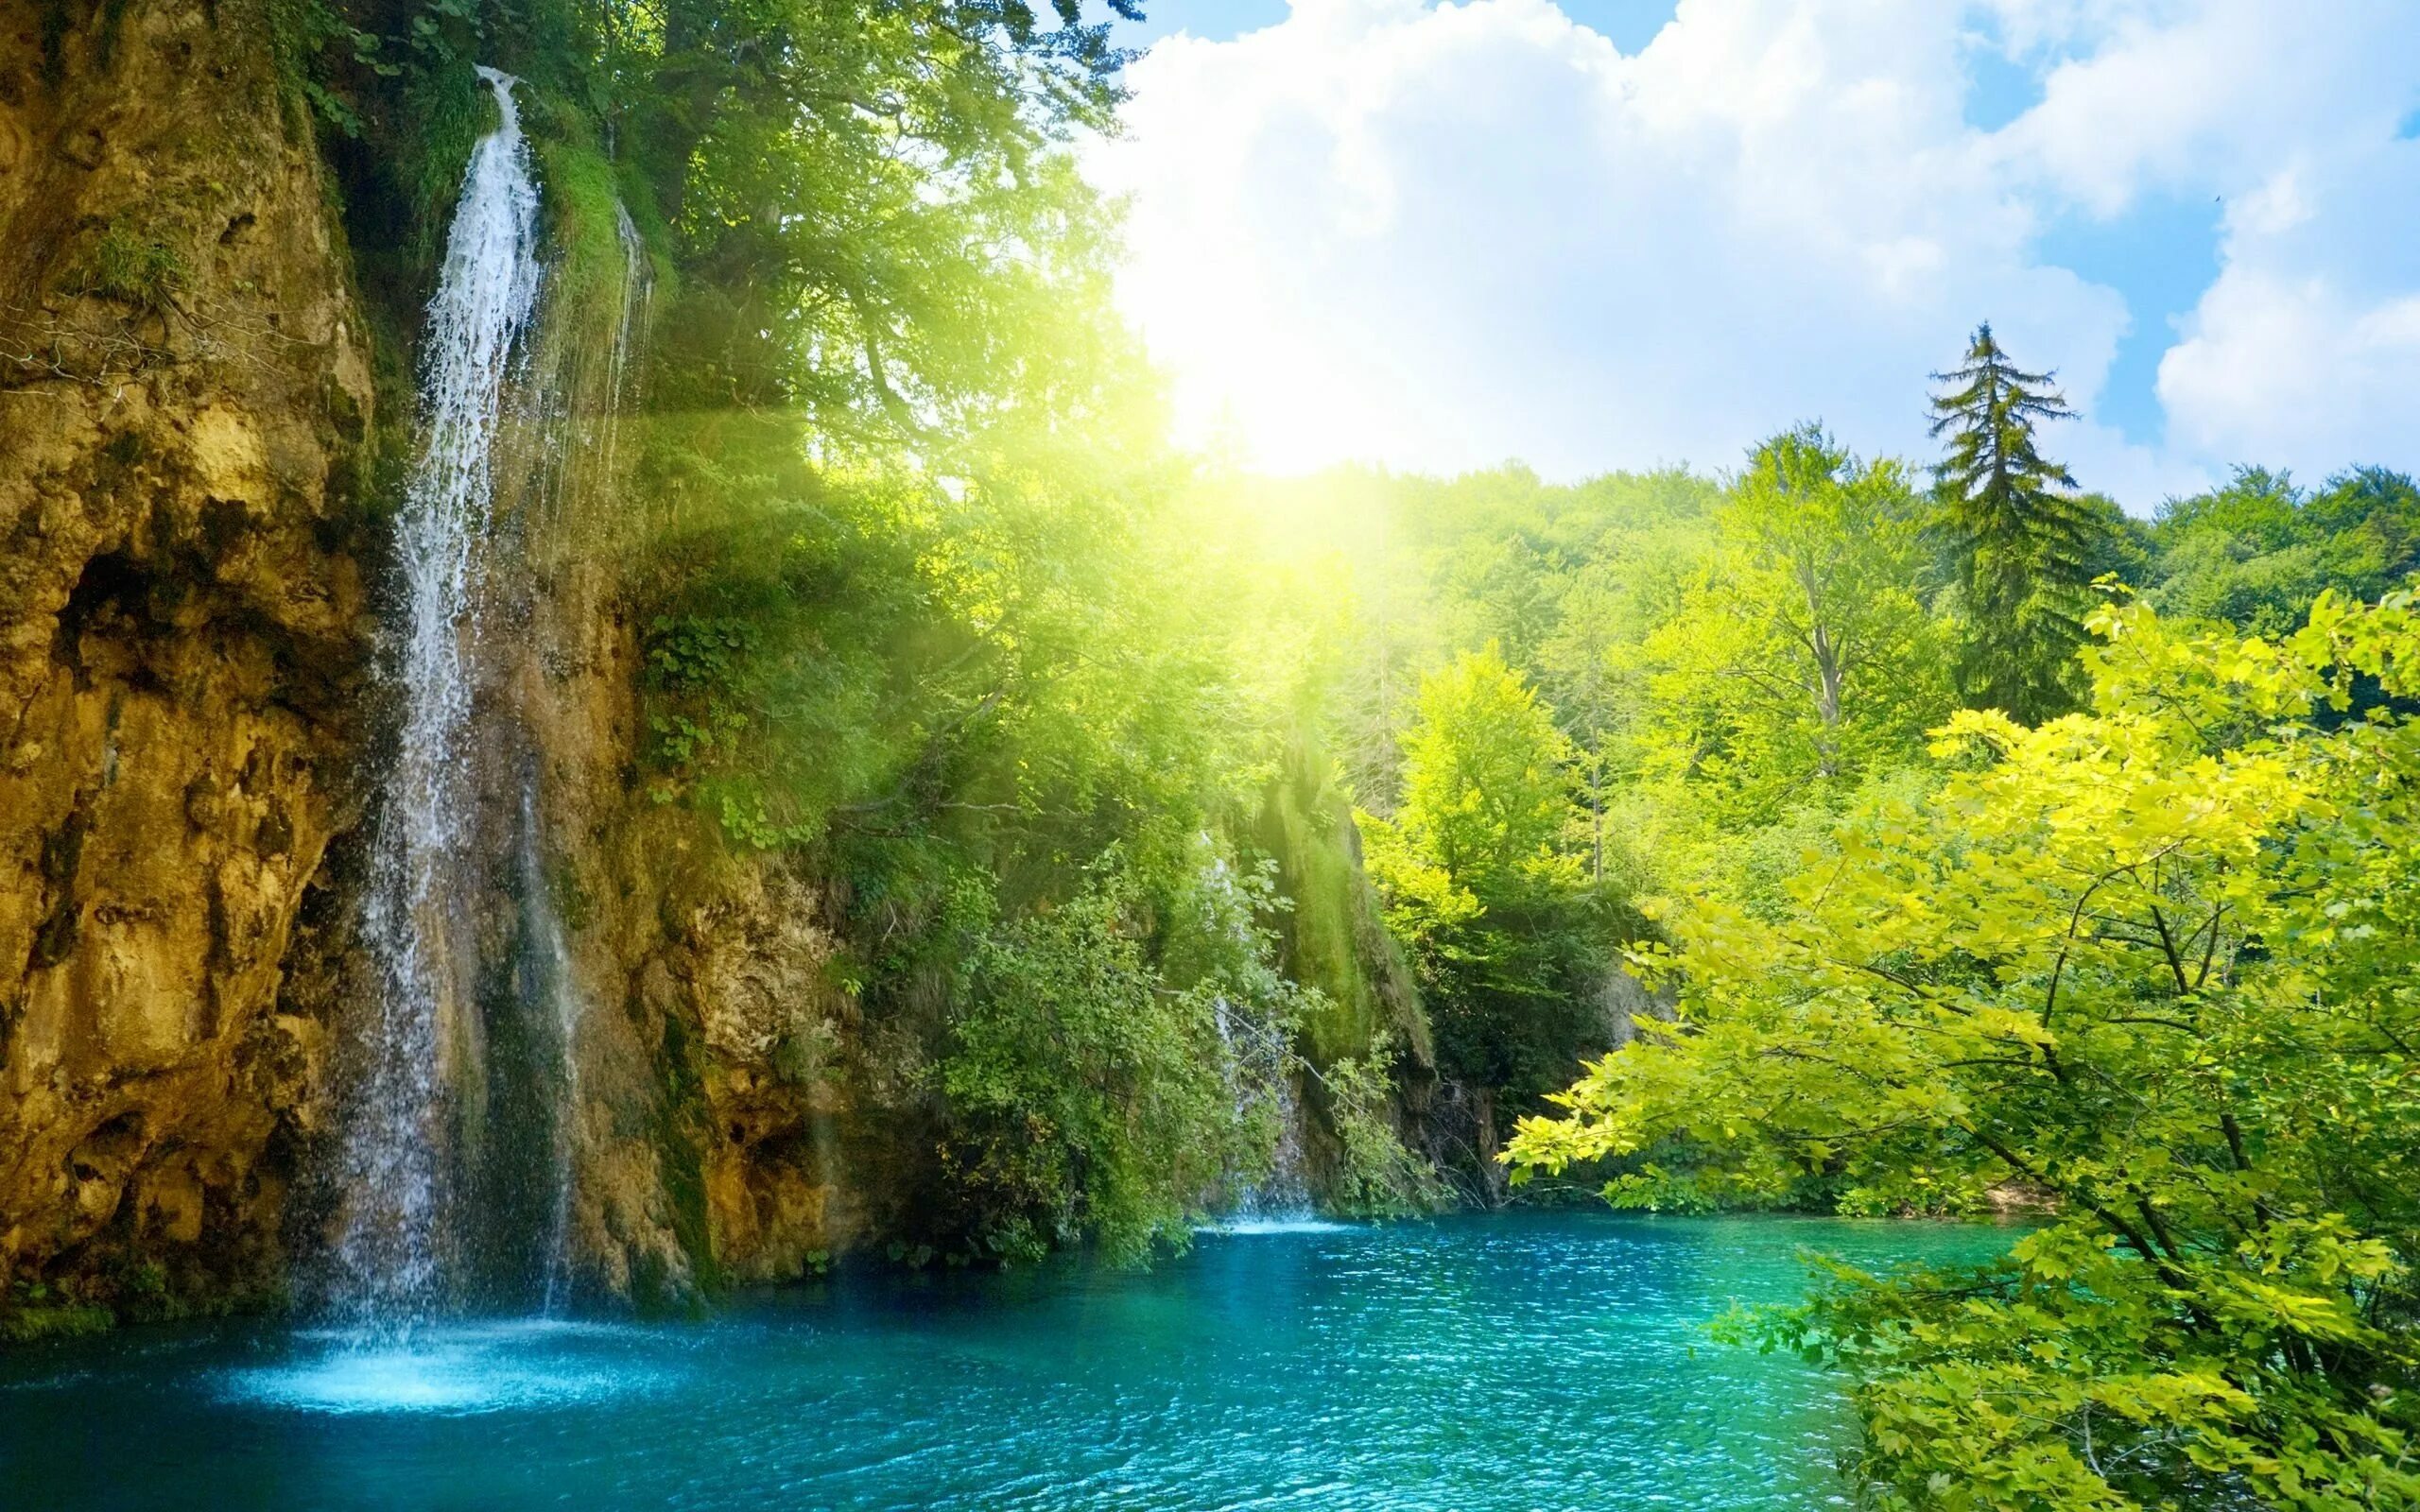 Бесплатные картинки на заставку компьютера. Природа. Красивая природа. Красивые пейзажи природы. Природа водопад.